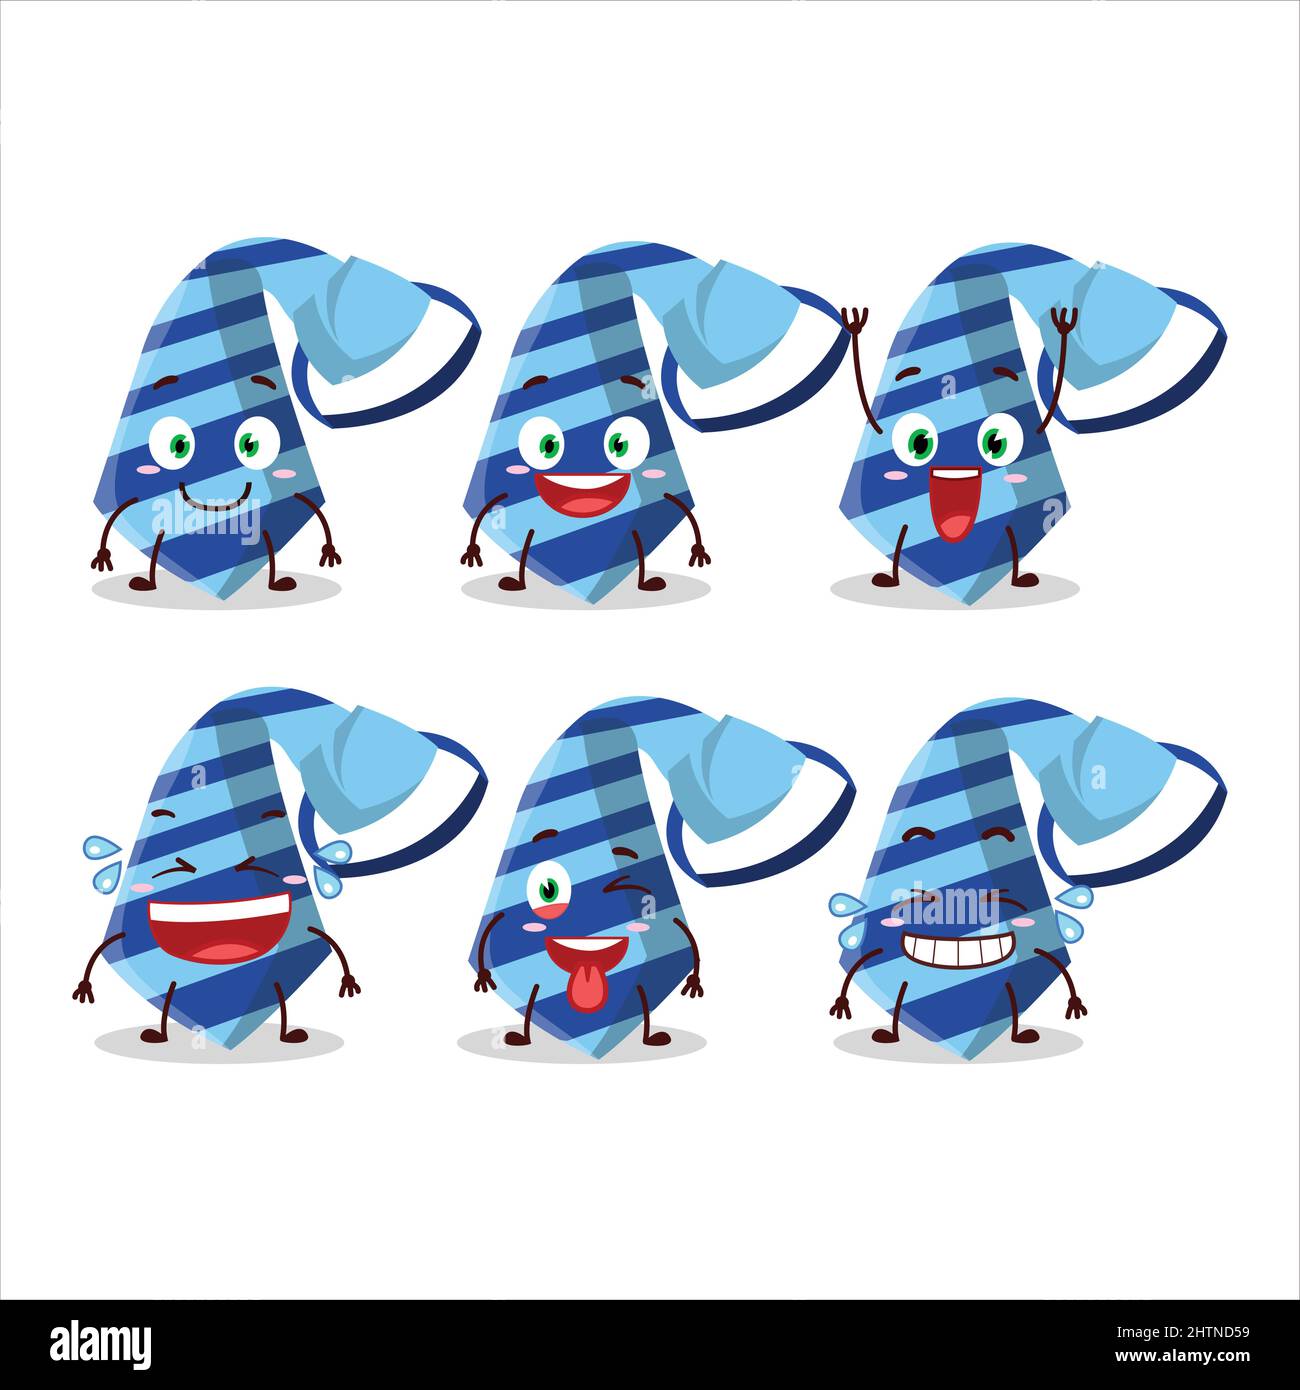 Personnage de dessin animé de cravate bleue avec expression de sourire.  Illustration vectorielle Image Vectorielle Stock - Alamy